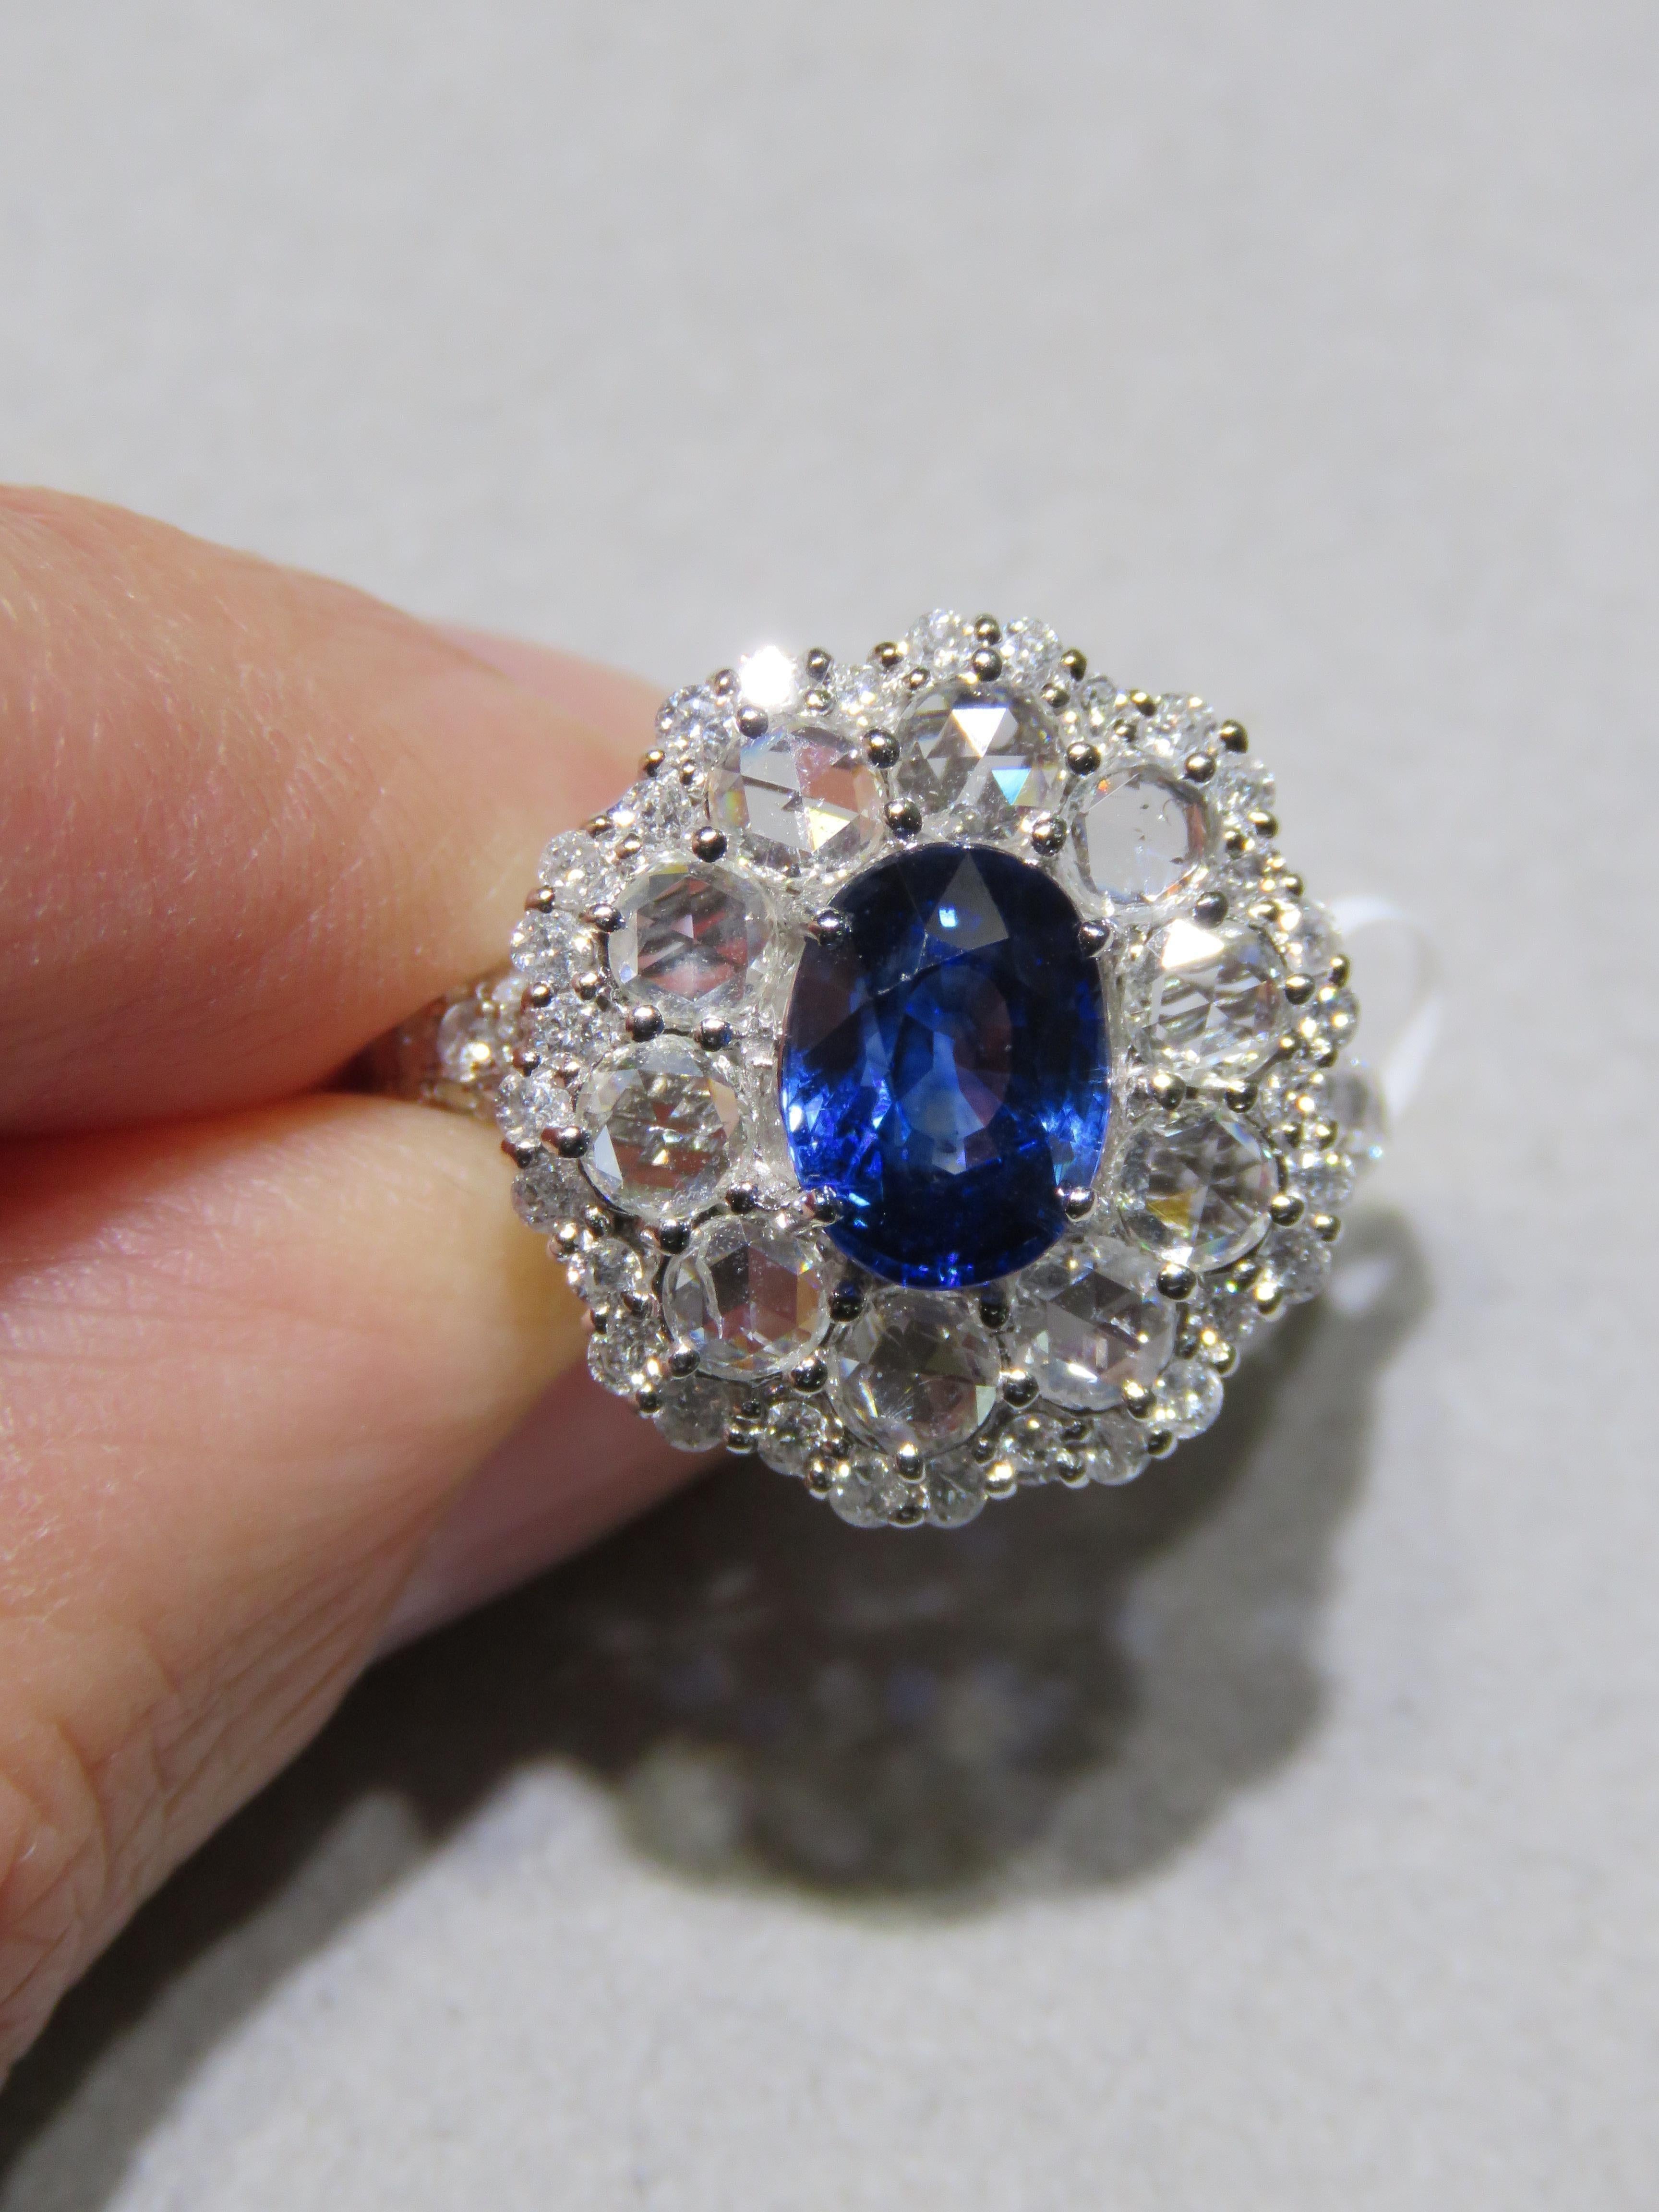 Der folgende Artikel, den wir anbieten, ist ein seltener, wichtiger, spektakulärer und brillanter 18KT Gold großer, wunderschöner Saphir-Diamant-Ring. Der Ring besteht aus einem seltenen, feinen, prächtigen, seltenen blauen Saphir, umgeben von